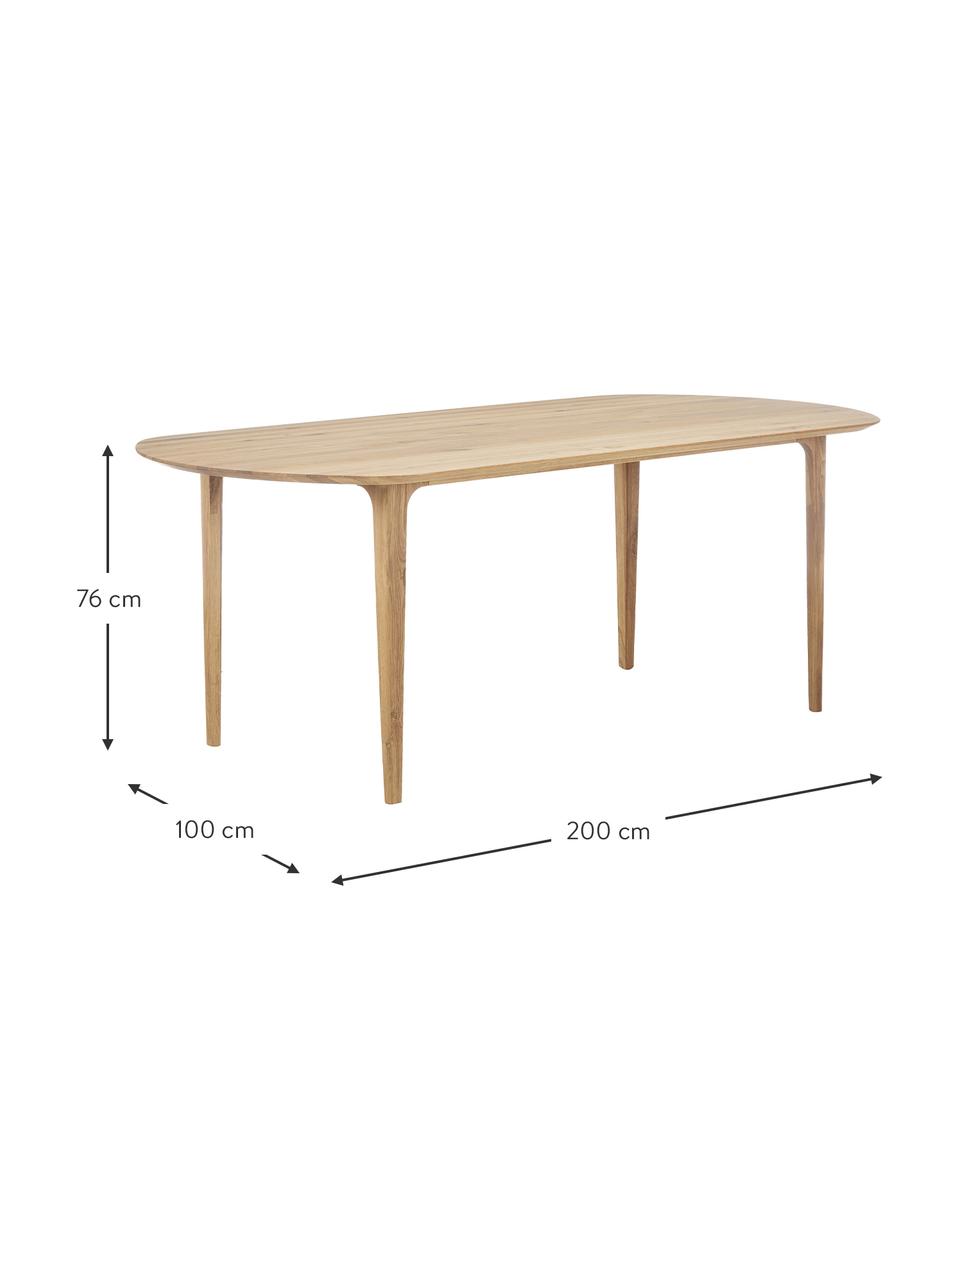 Owalny stół do jadalni z litego drewna dębowego Archie, Lite drewno dębowe, olejowane
100% drewno FSC pochodzące ze zrównoważonej gospodarki leśnej, Drewno dębowe, S 200 x G 100 cm